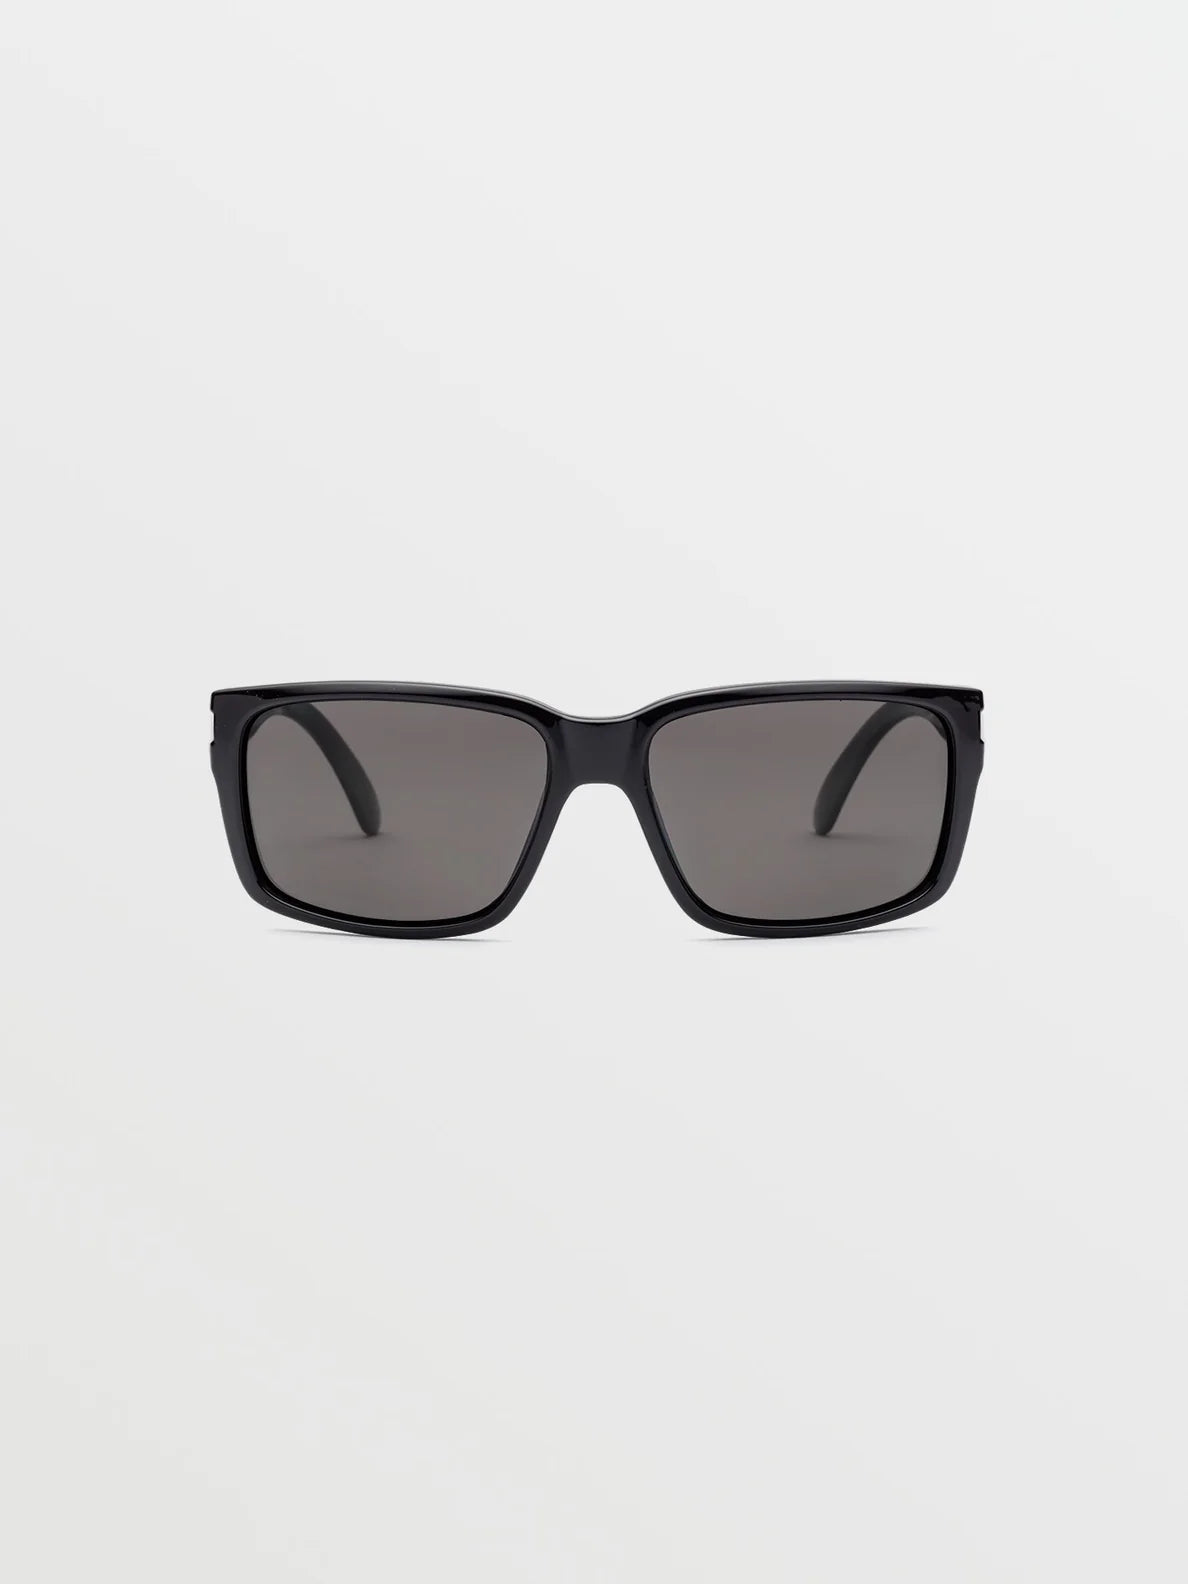 Gafas Volcom Gloss Black / Gray Polar | surfdevils.com